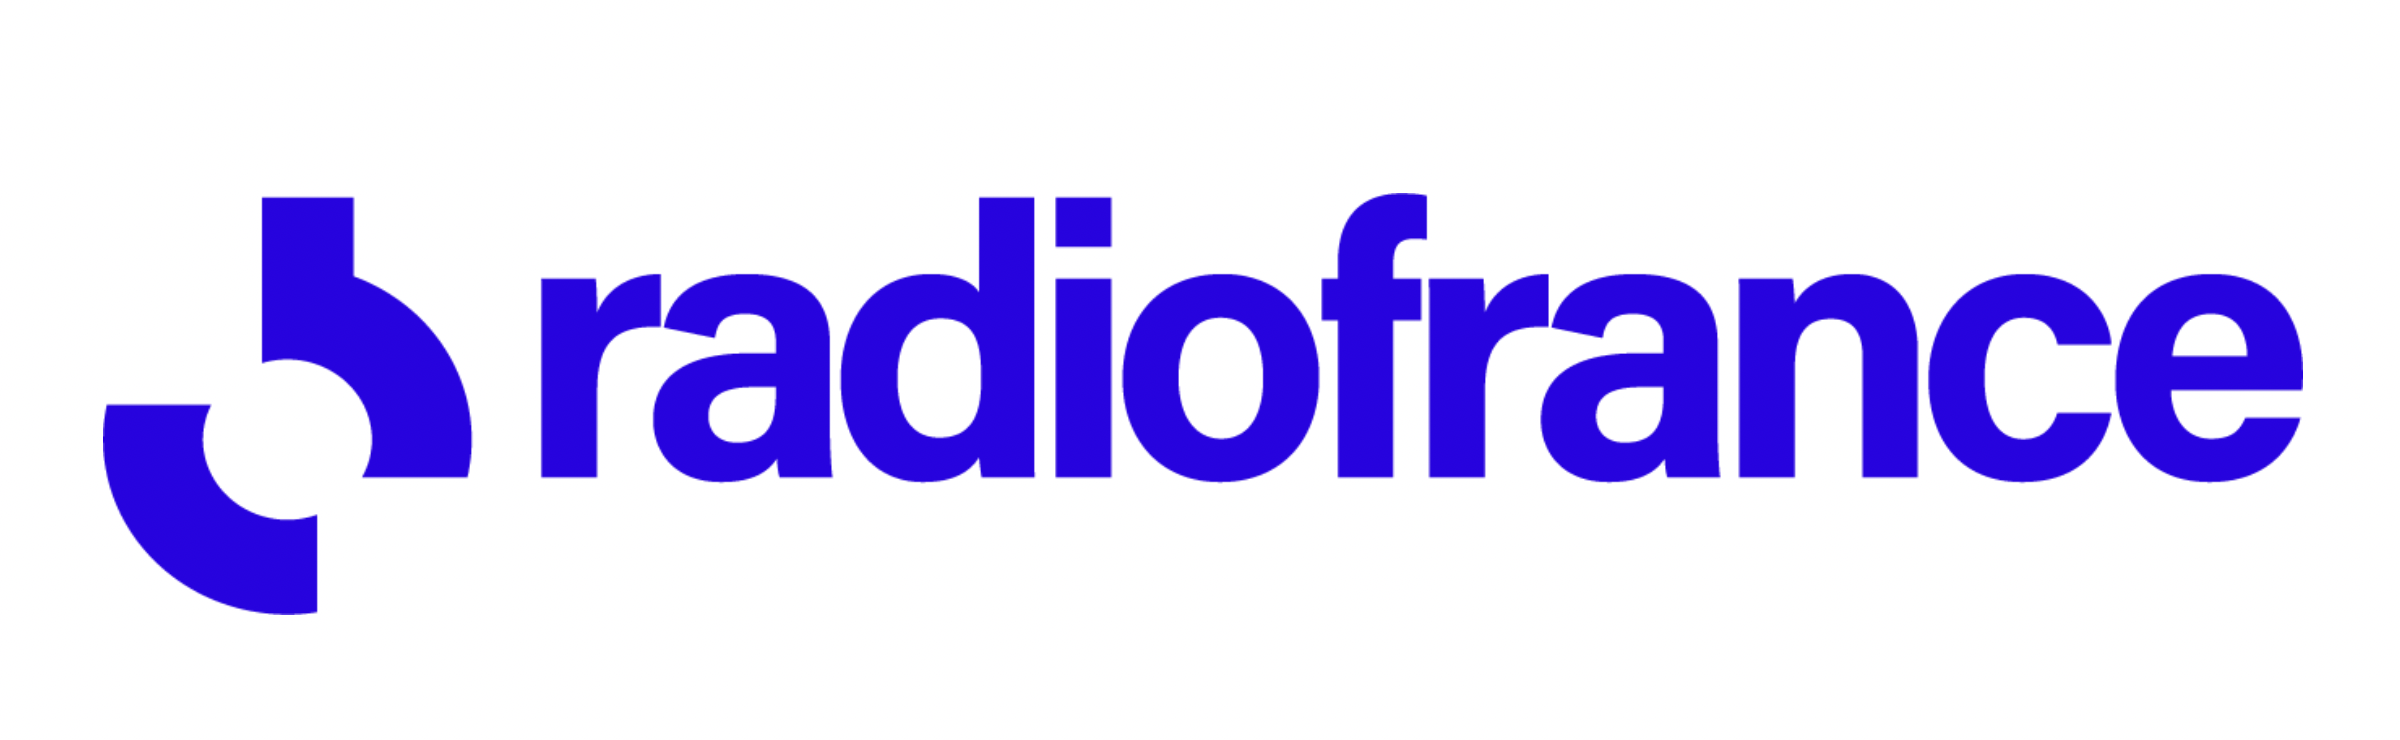 Près de 105 millions d’écoutes à la demande pour Radio France